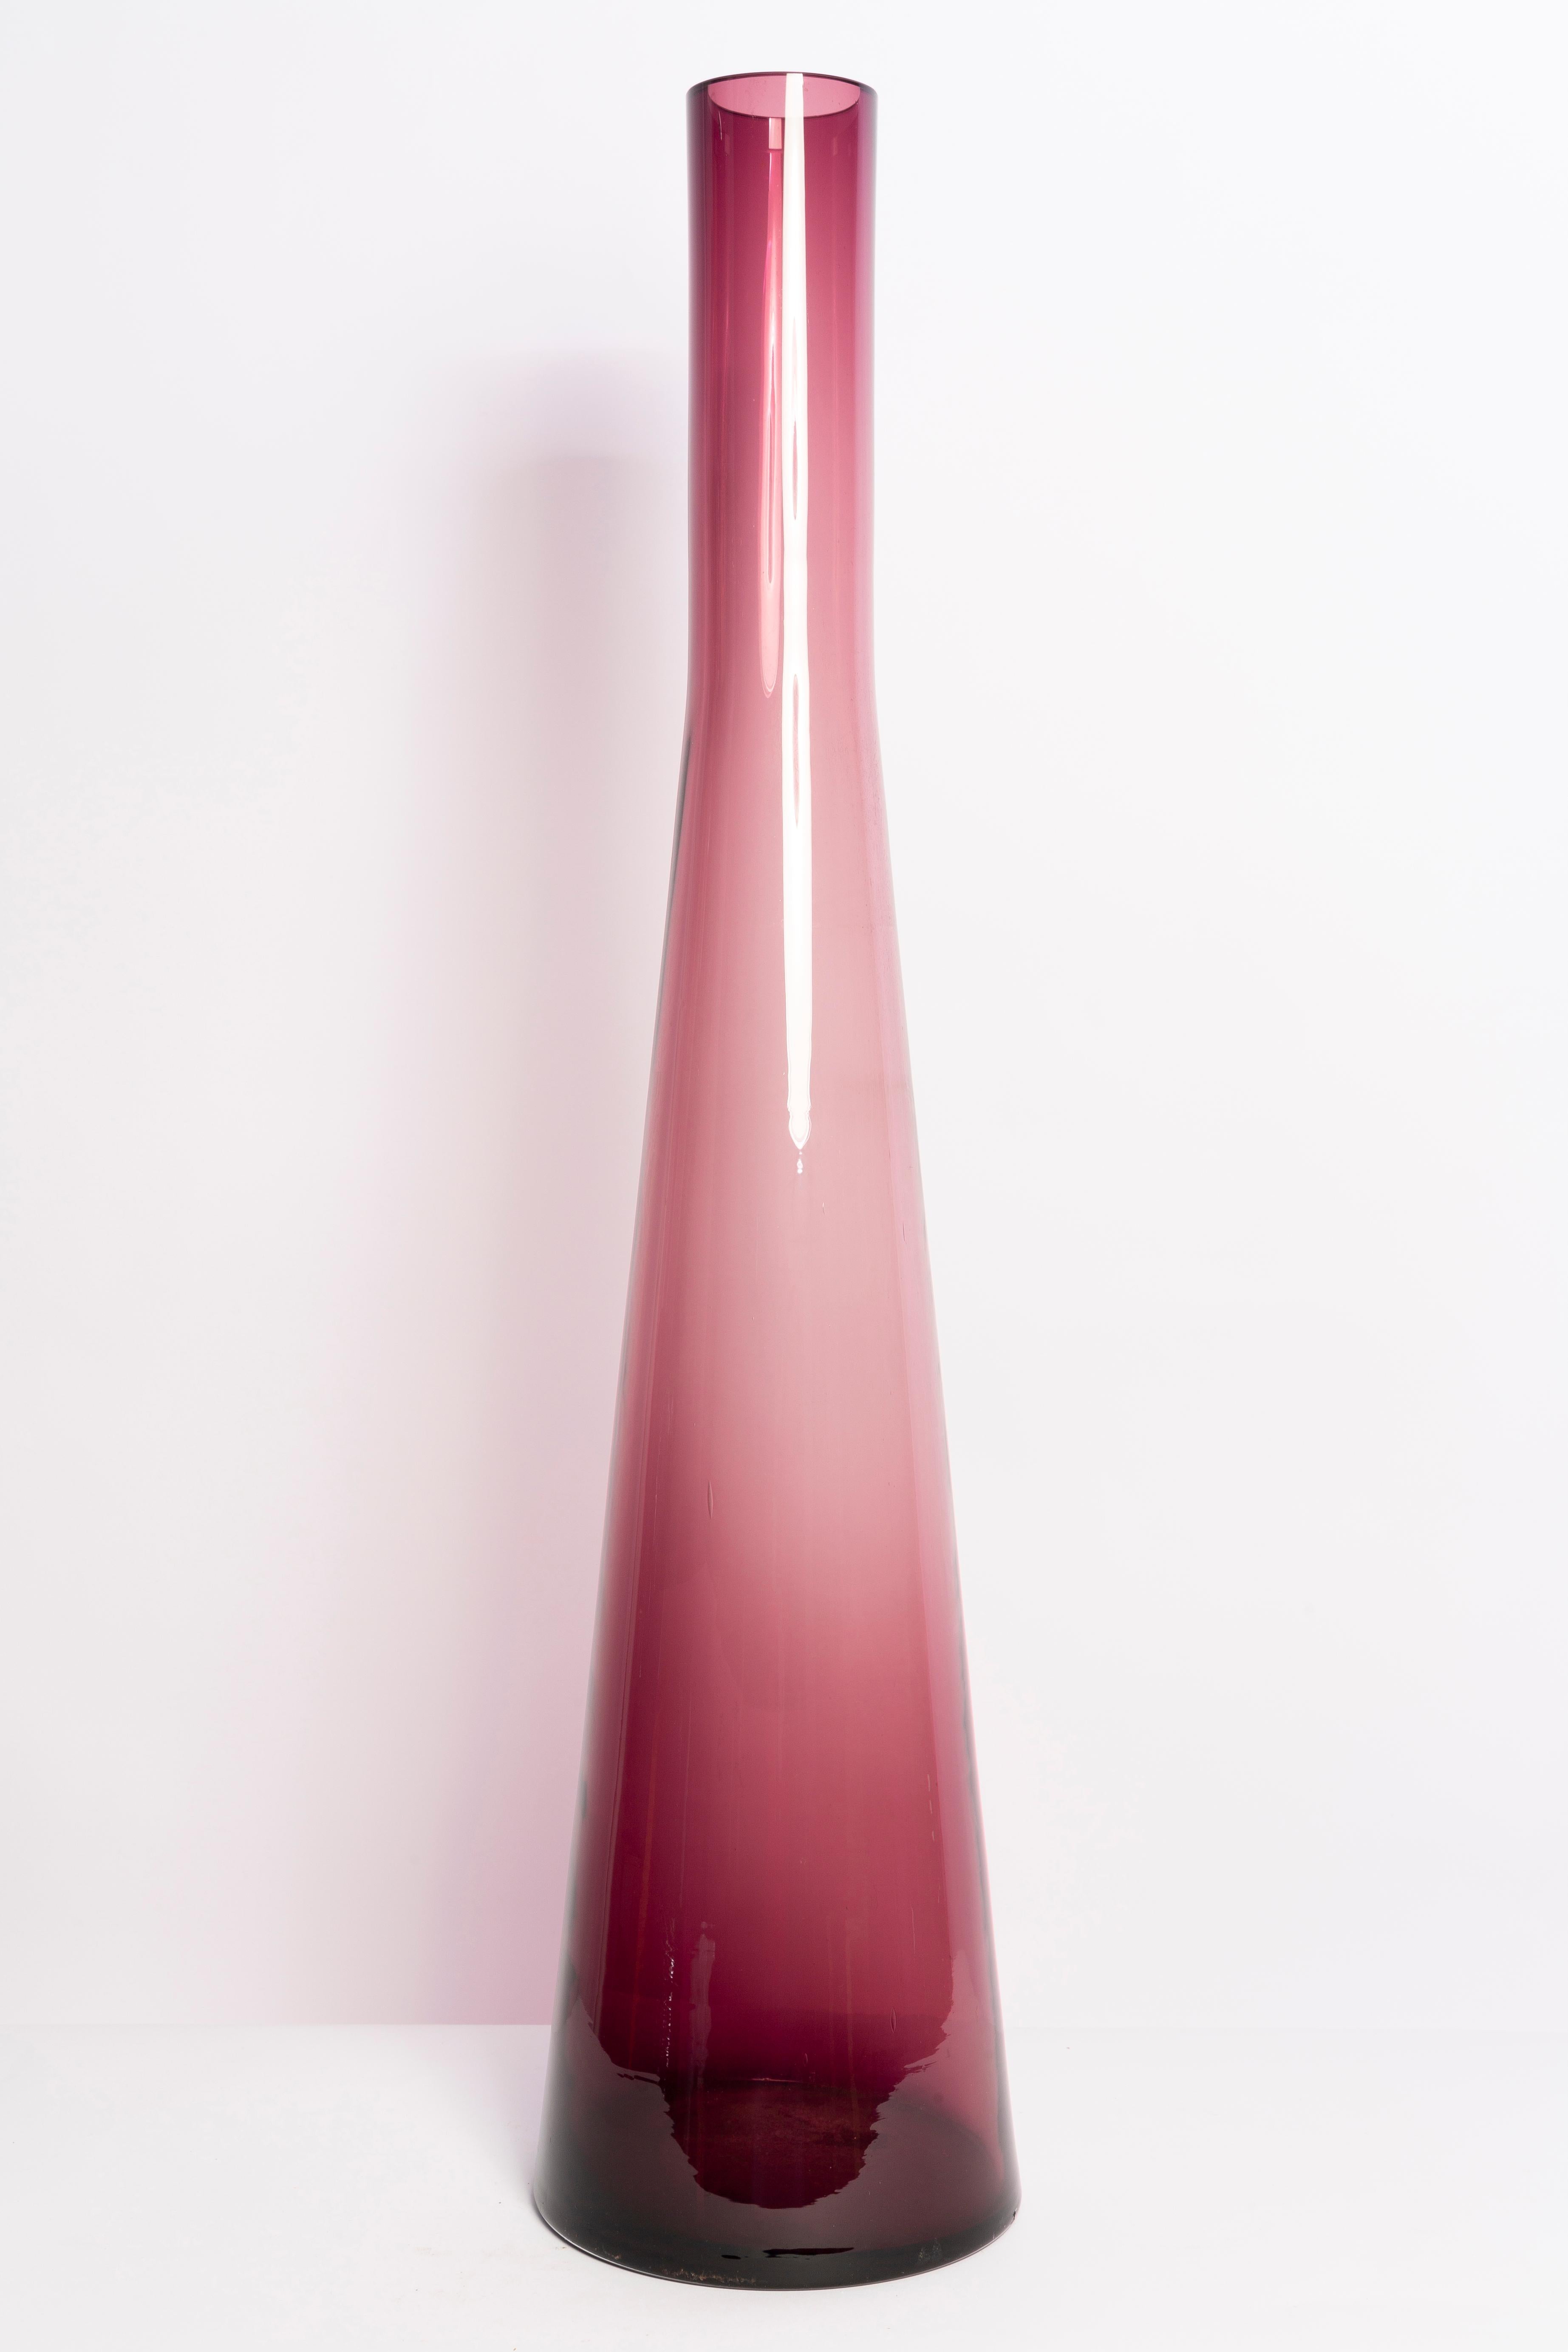 Vase violet dans une forme étonnante. Produit dans les années 1960 en Italie.
Verre en parfait état. Le vase semble avoir été sorti de sa boîte.

Pas d'accrocs, de défauts, etc. La surface extérieure en relief, l'intérieur lisse. Vase en verre